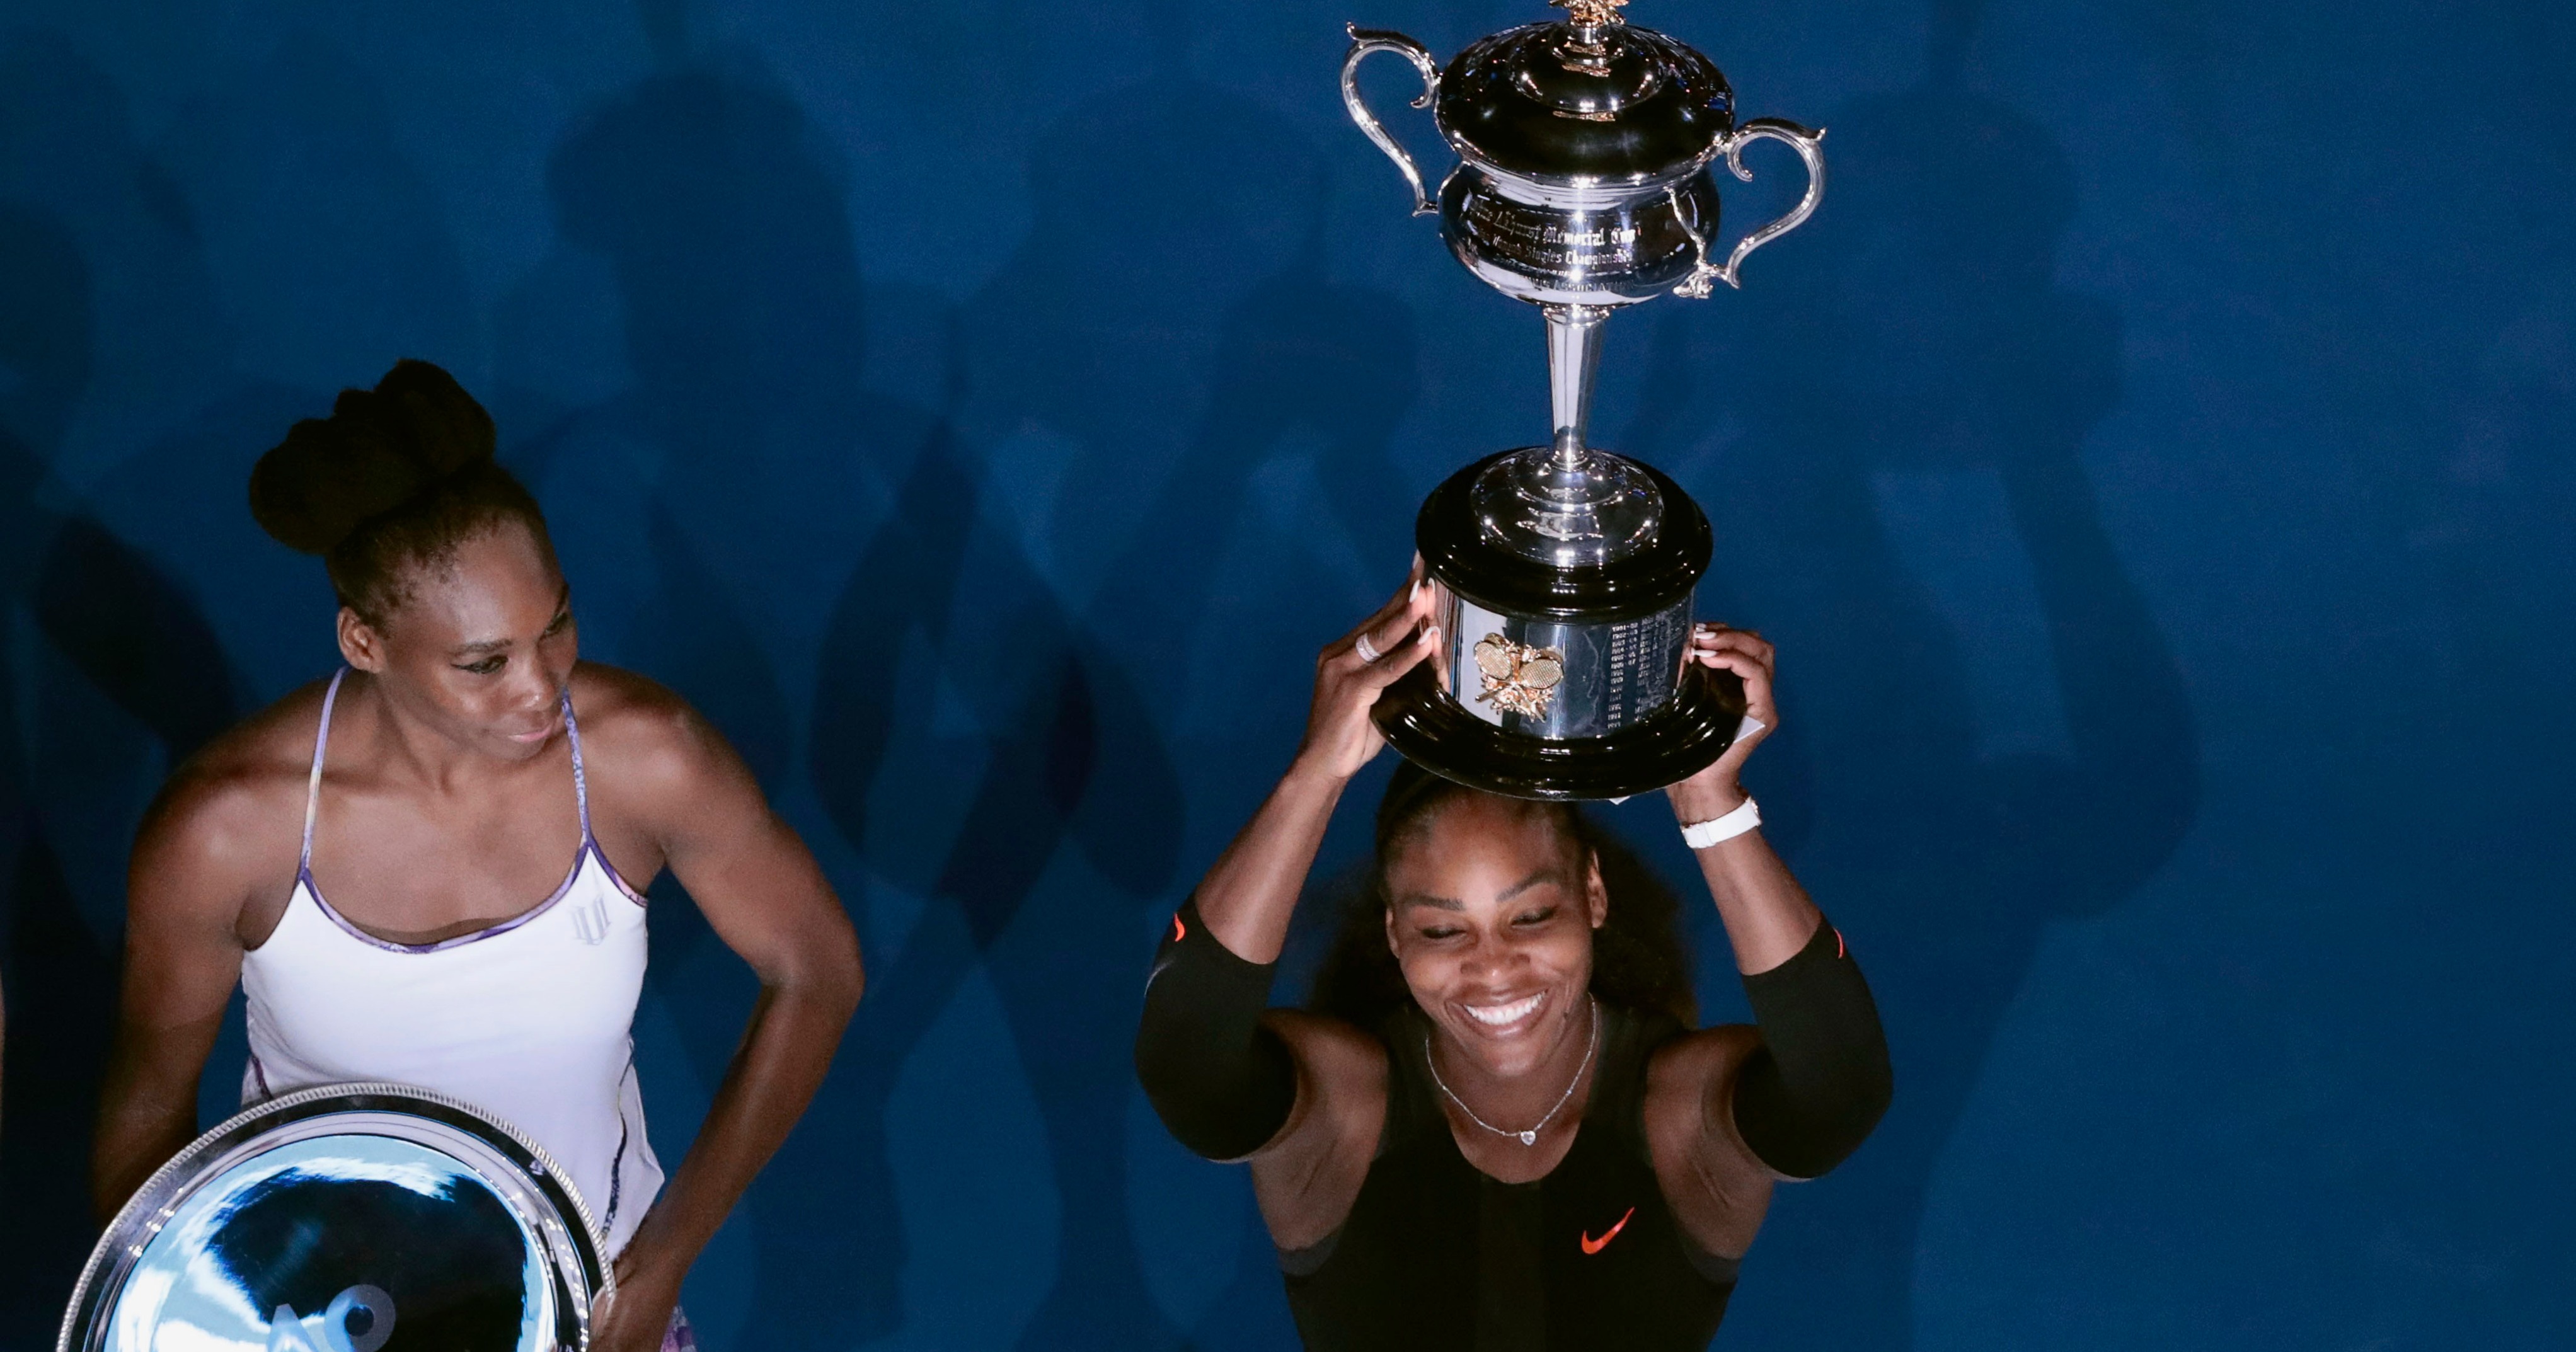 Melbourne, finale Australian Open 2017, Serena Williams vince contro la sorella